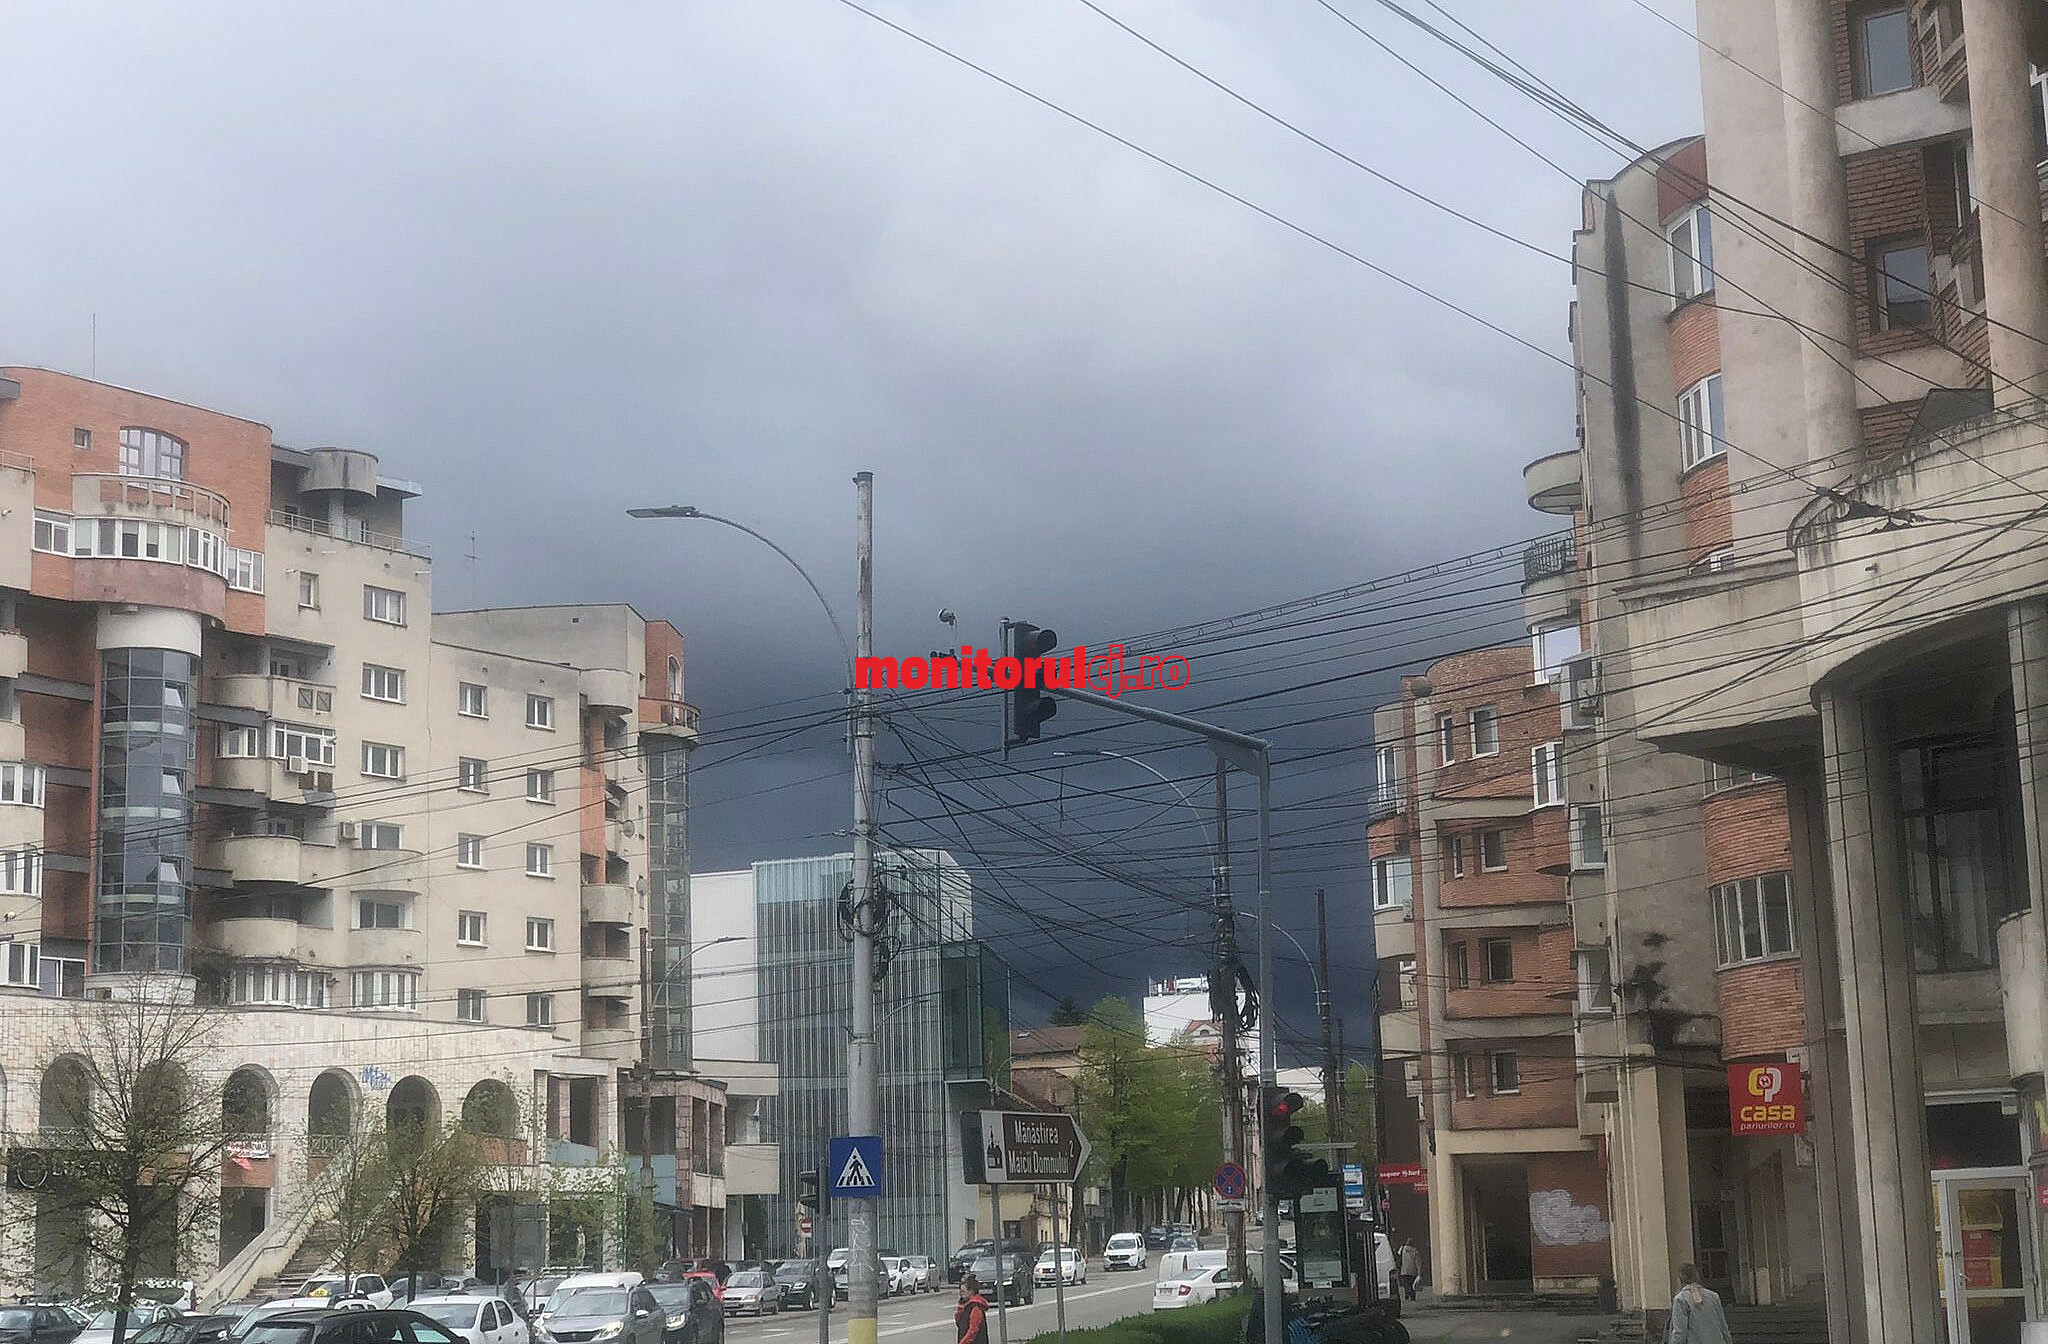 Vremea în Cluj-Napoca va fi instabilă în această săptămână/ Foto: monitorulcj.ro